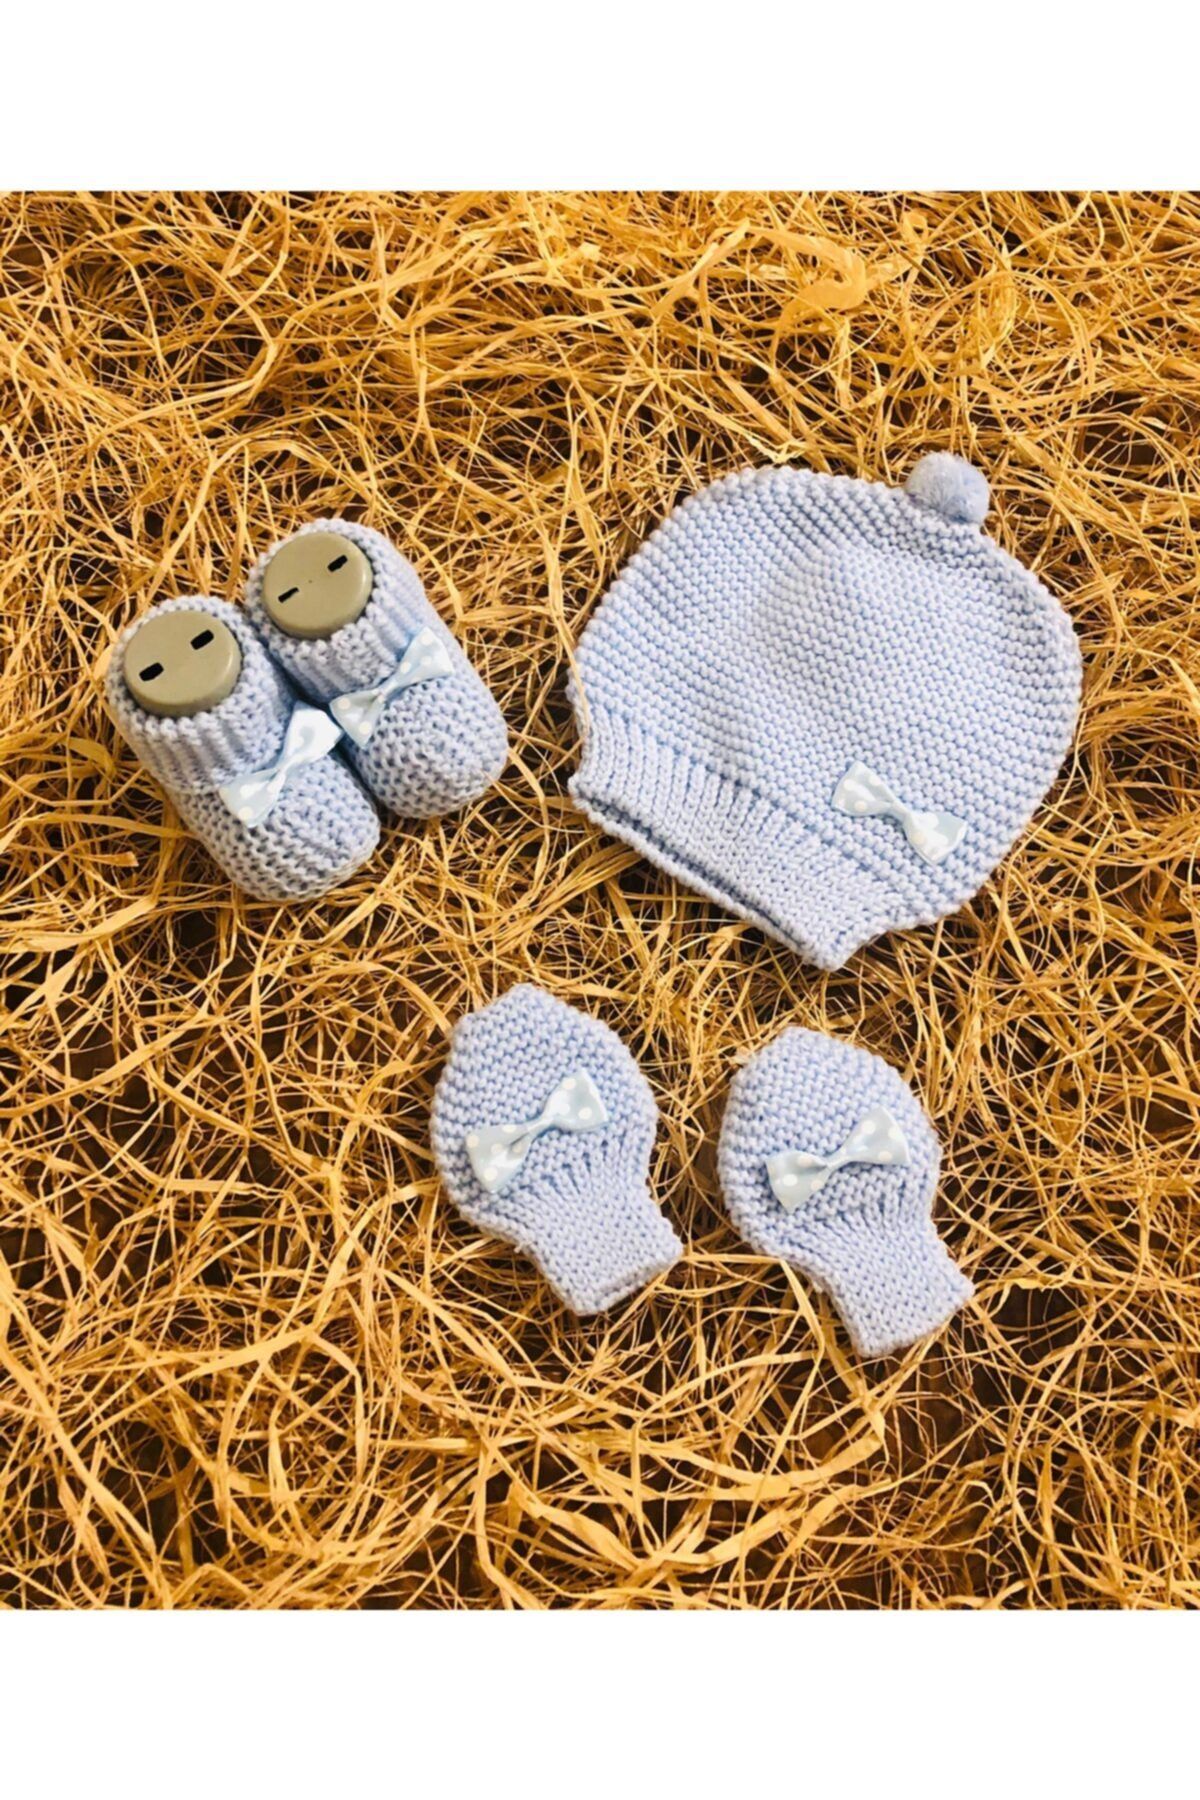 Genel Markalar Yeni Doğan Erkek Bebek Mavi Fiyonklu Triko Bere Eldiven Patik Set 0-3